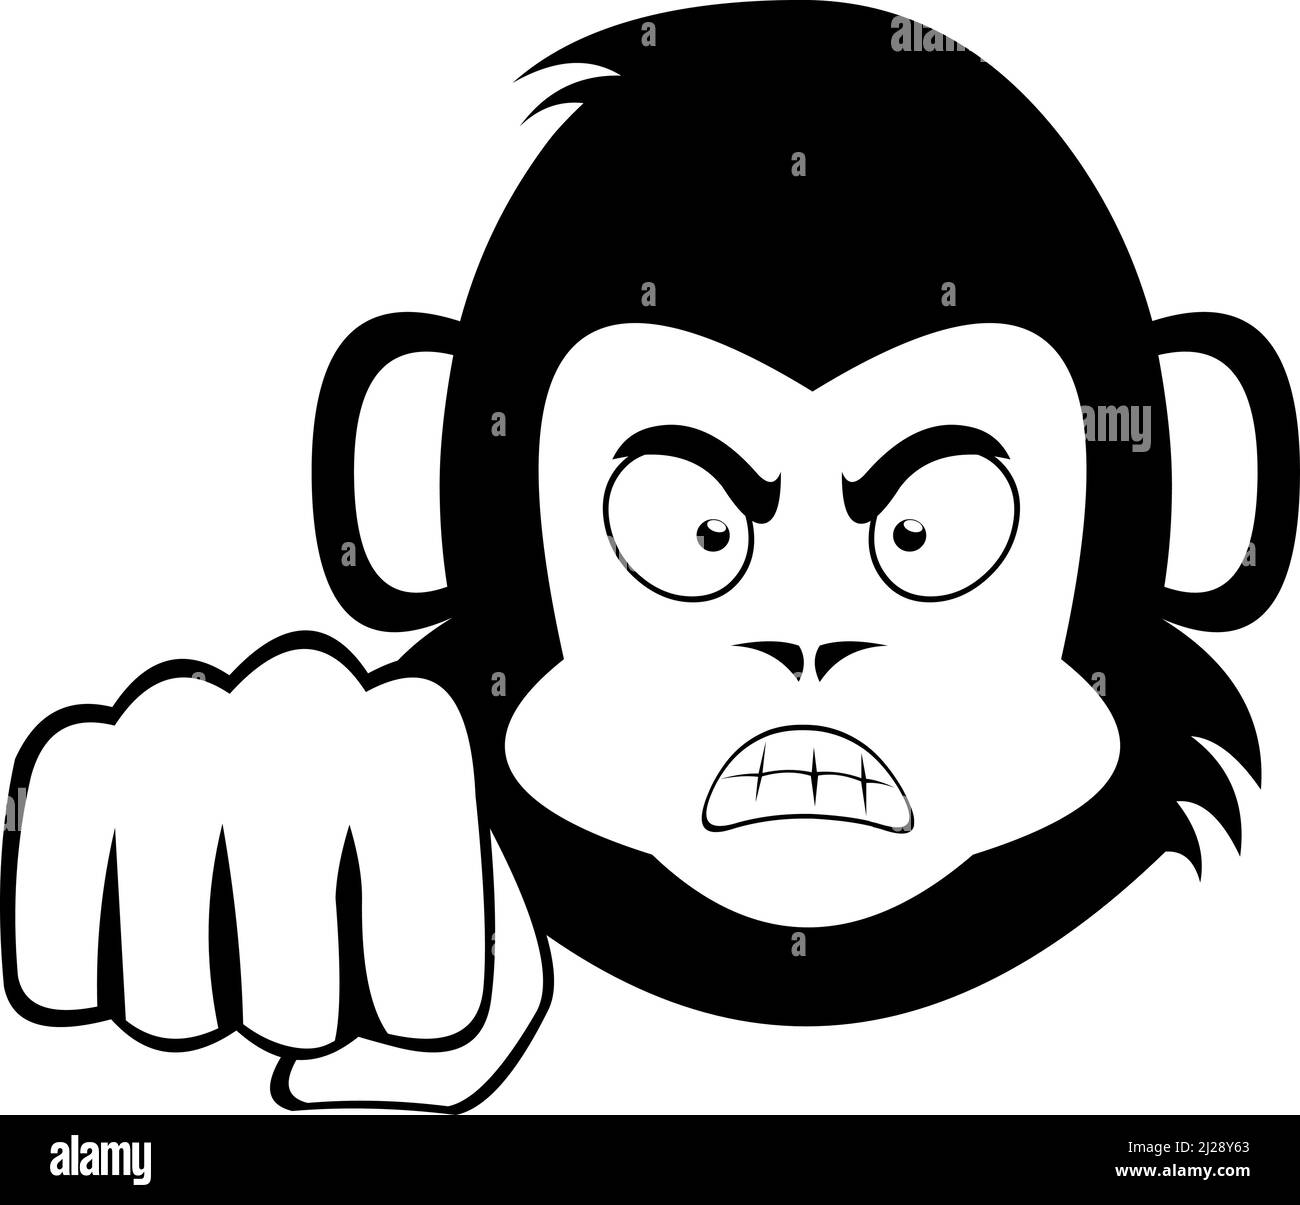 Vektor-Illustration des Gesichts eines Cartoon-Affen oder Gorilla mit einem wütenden Ausdruck und geben eine Faust Beule Stock Vektor